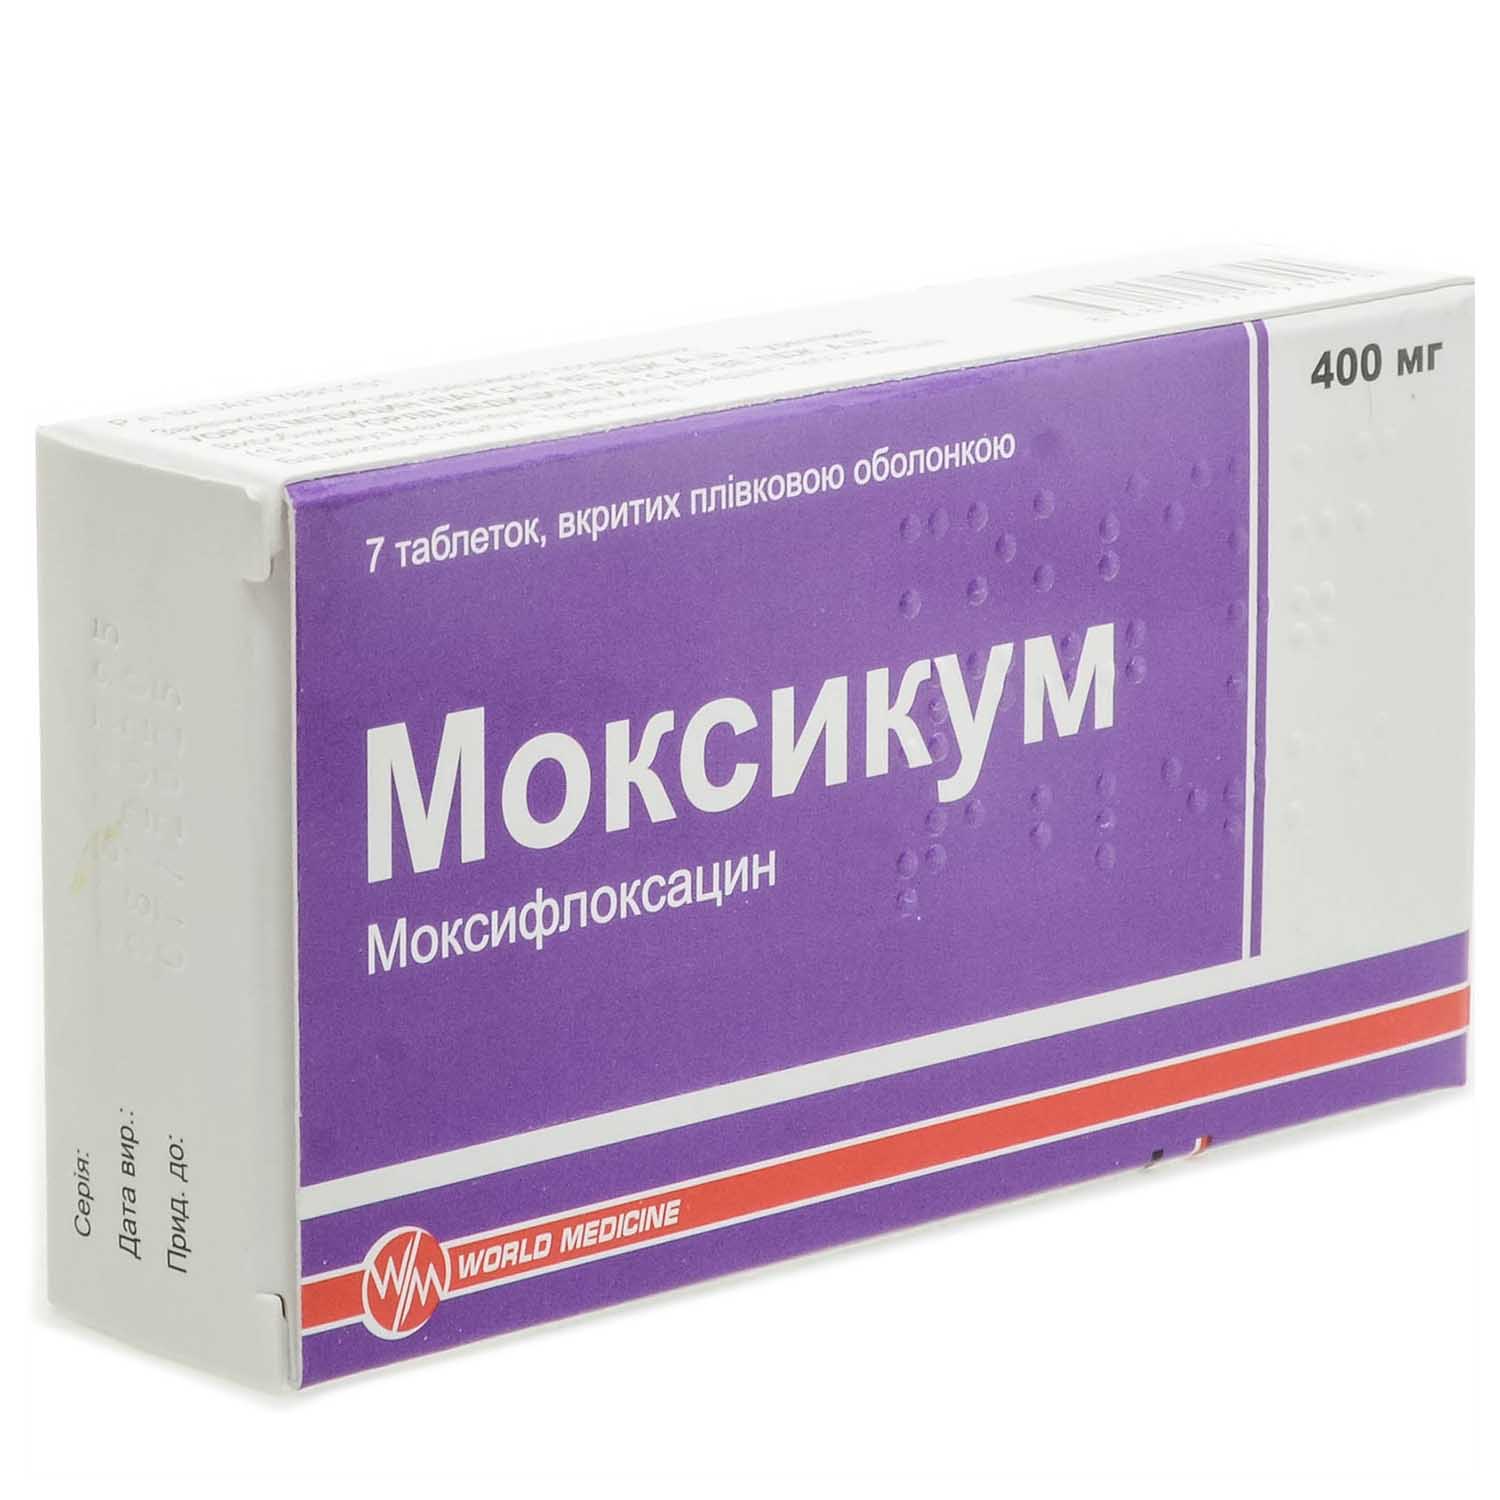 Моксикум 400 мг аналоги